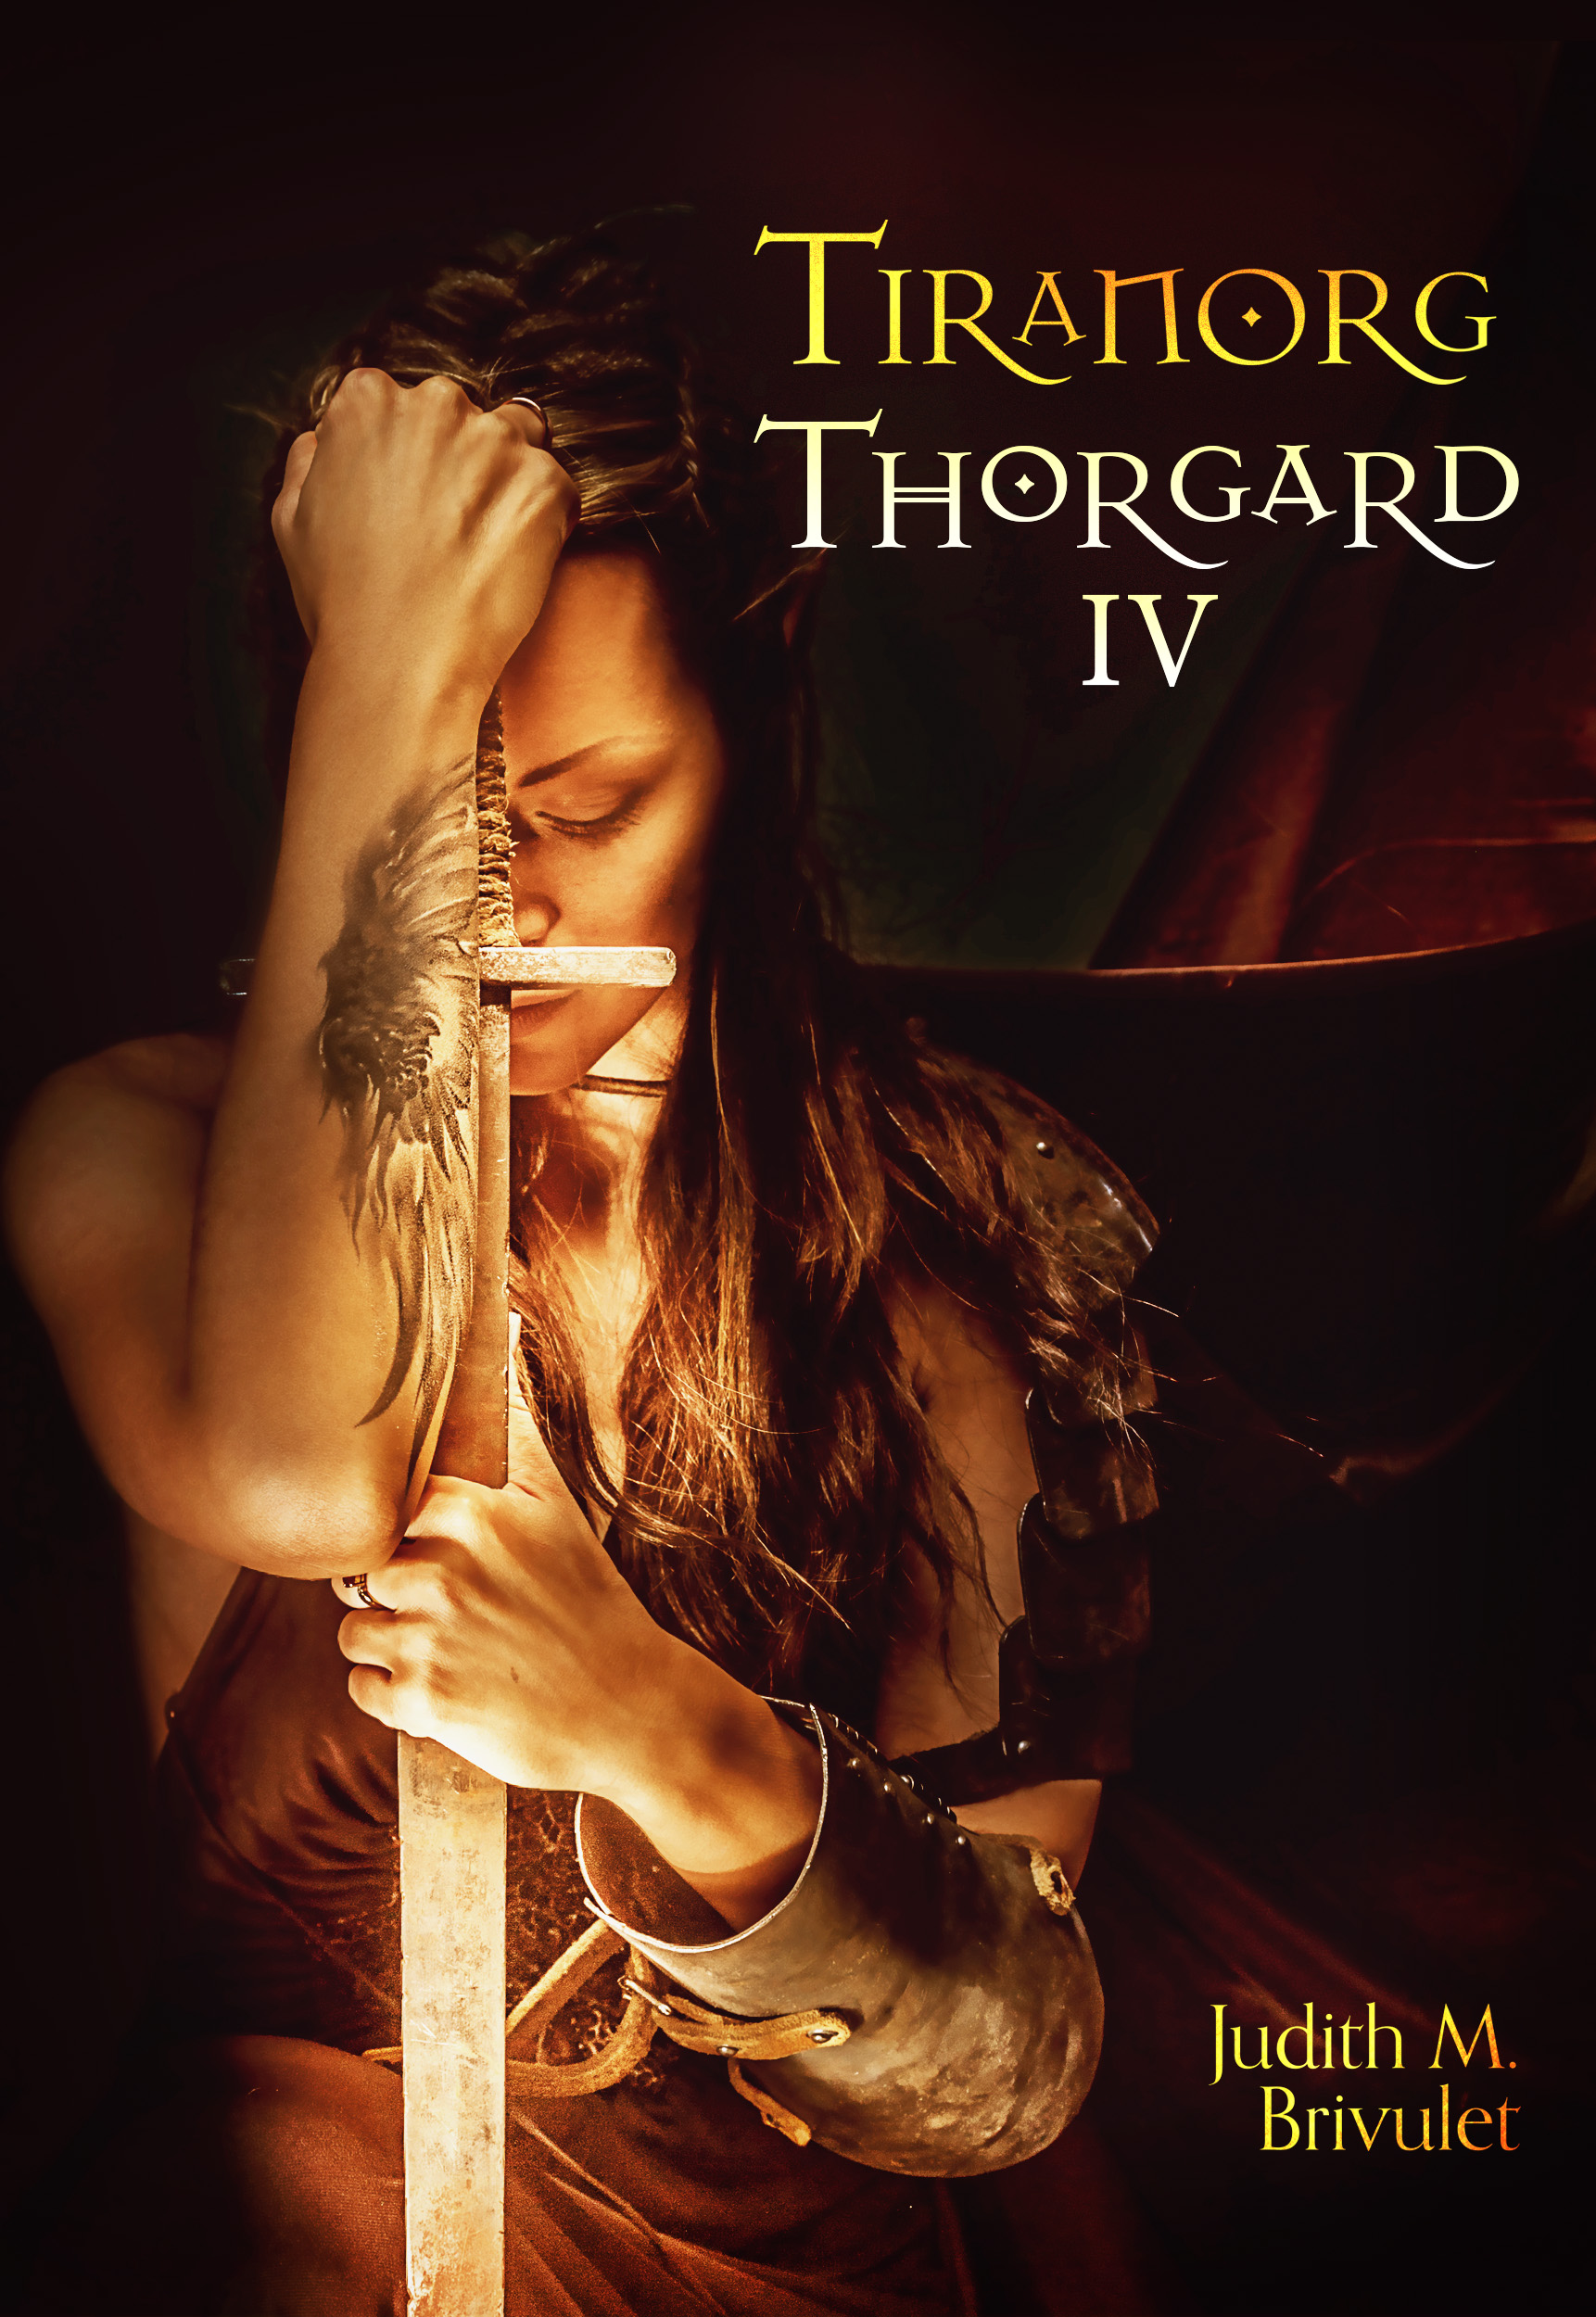 Tiranorg, Thorgard IV